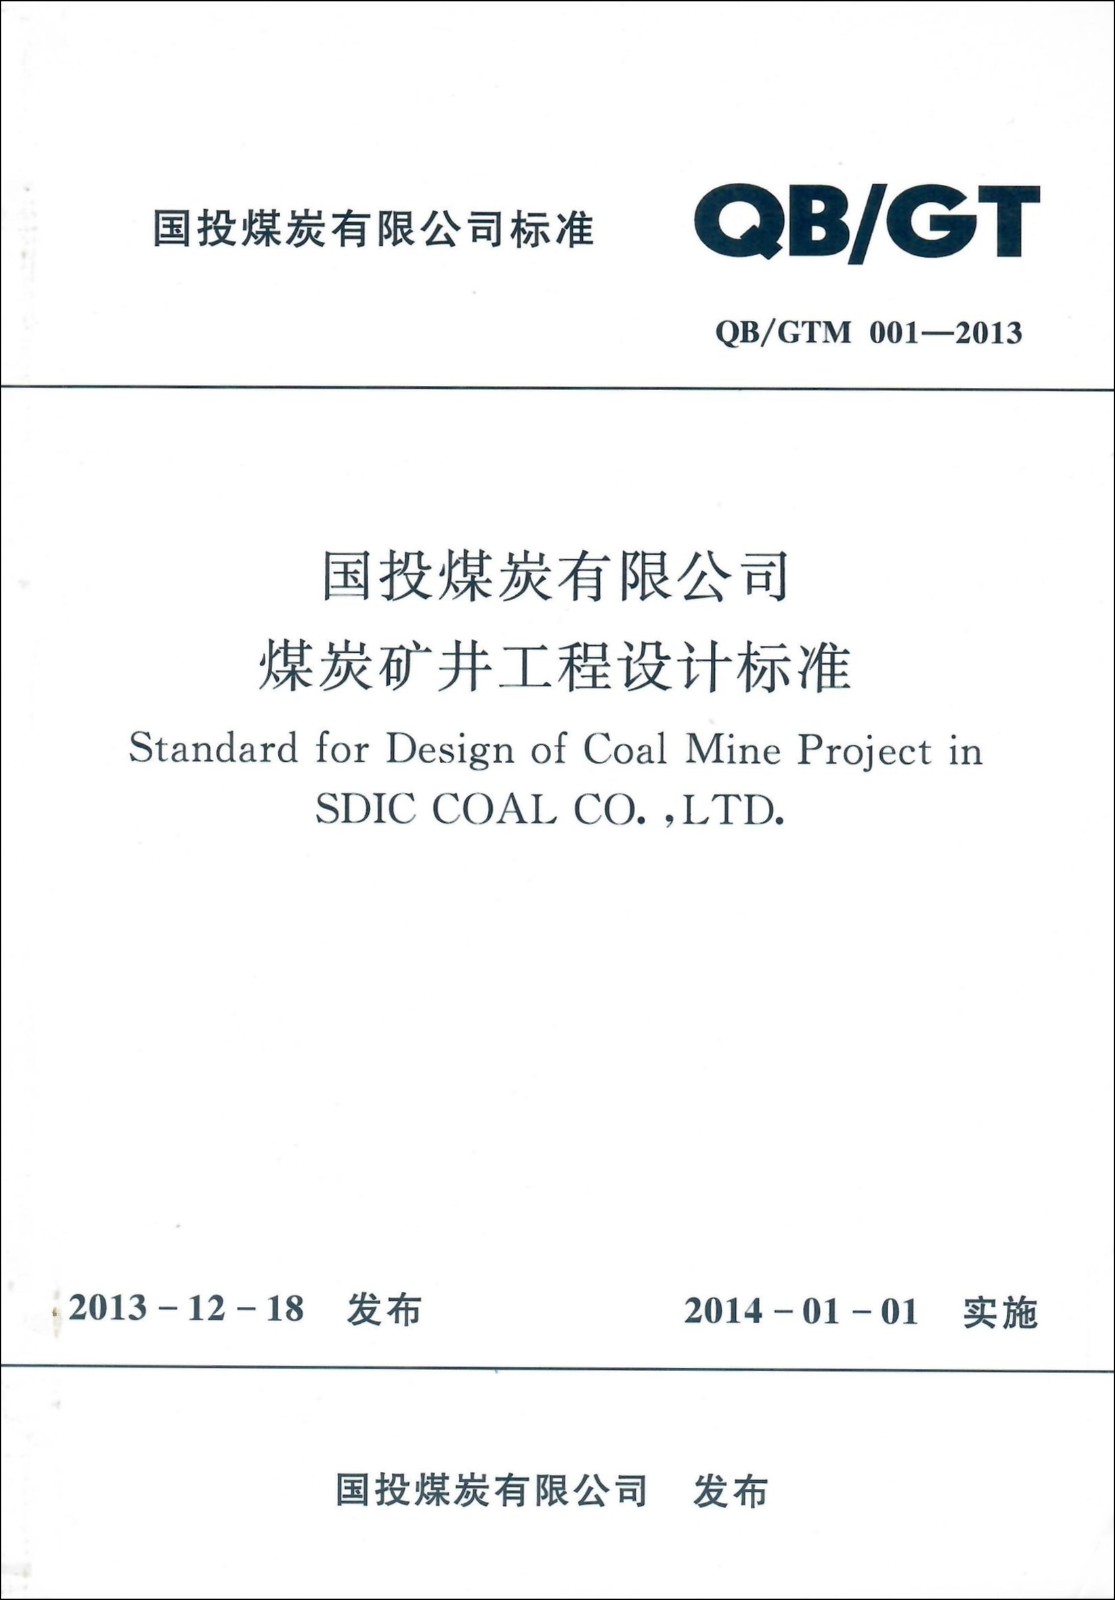 国投煤炭有限公司煤炭矿井工程设计标准.jpg